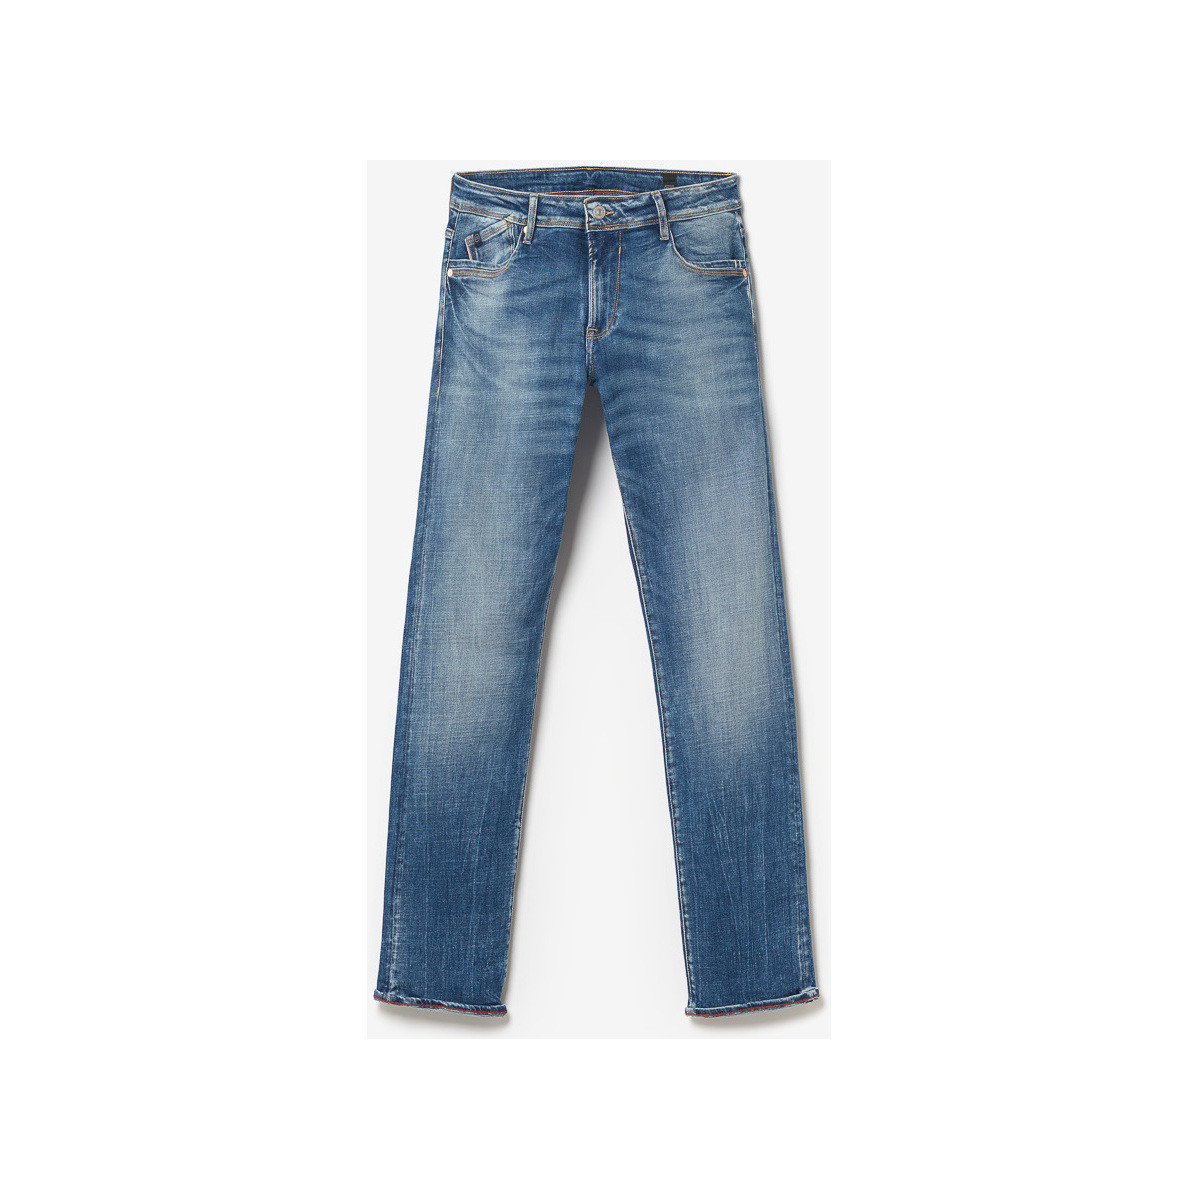 Le Temps des Cerises Bleu Hodoul 800/12 regular jeans bleu S6h5tHm6